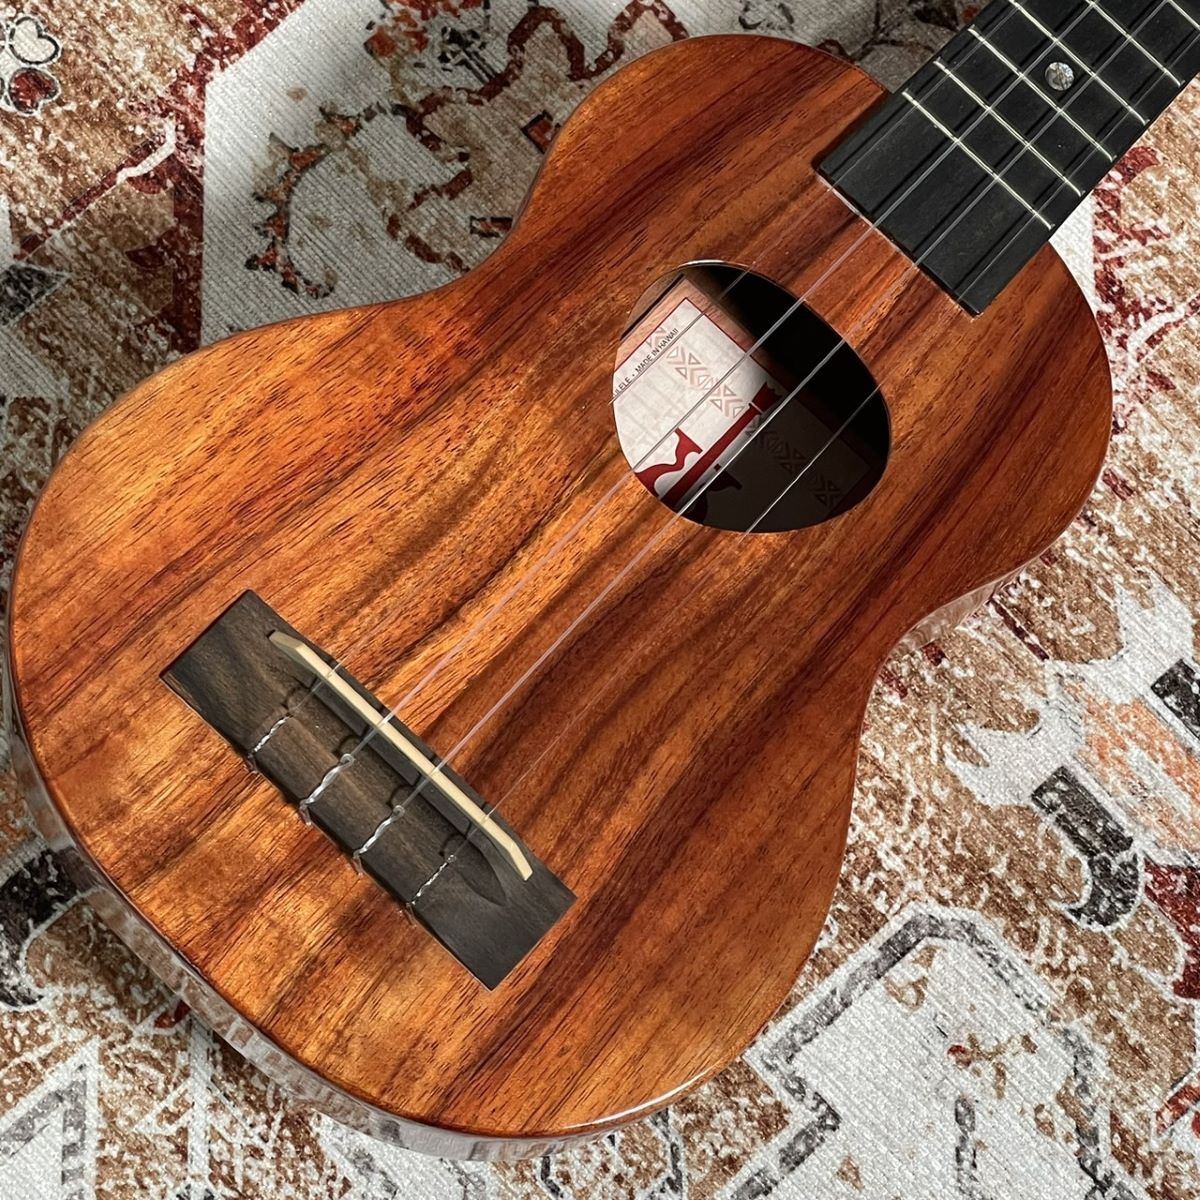 【2007年製】KoAloha KSM-00 / ukulele【ハワイ産】